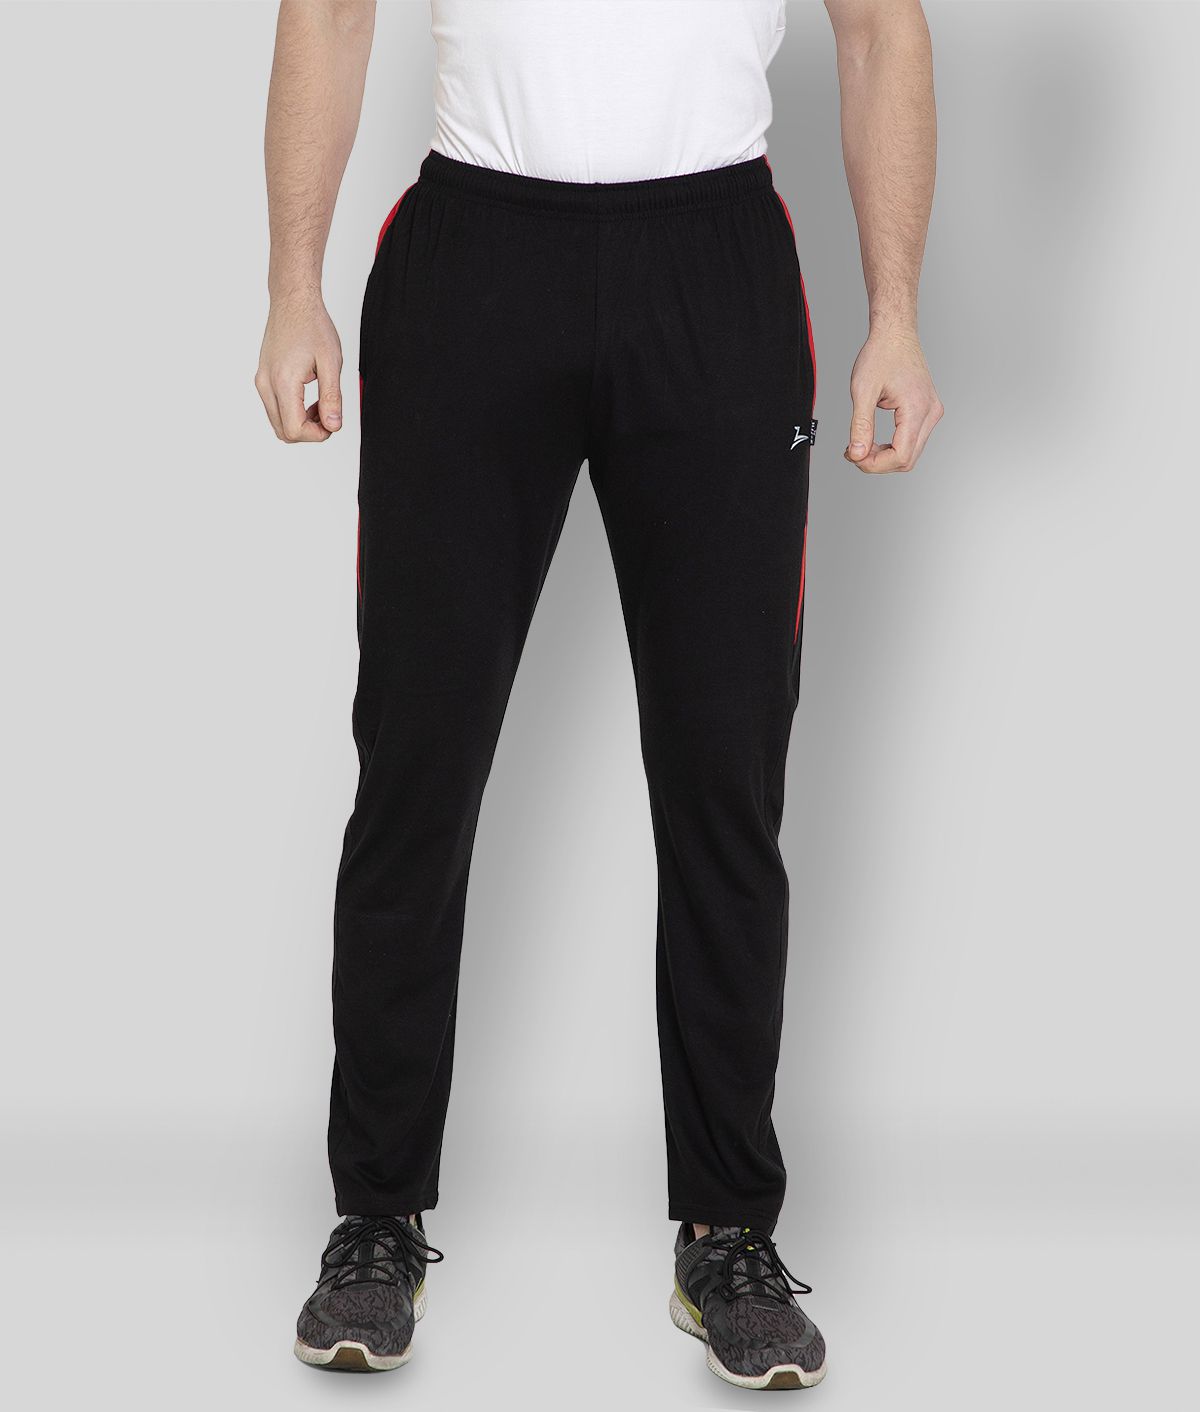     			Zeffit - Black Cotton Blend Men's Sports Trackpants ( Pack of 1 )